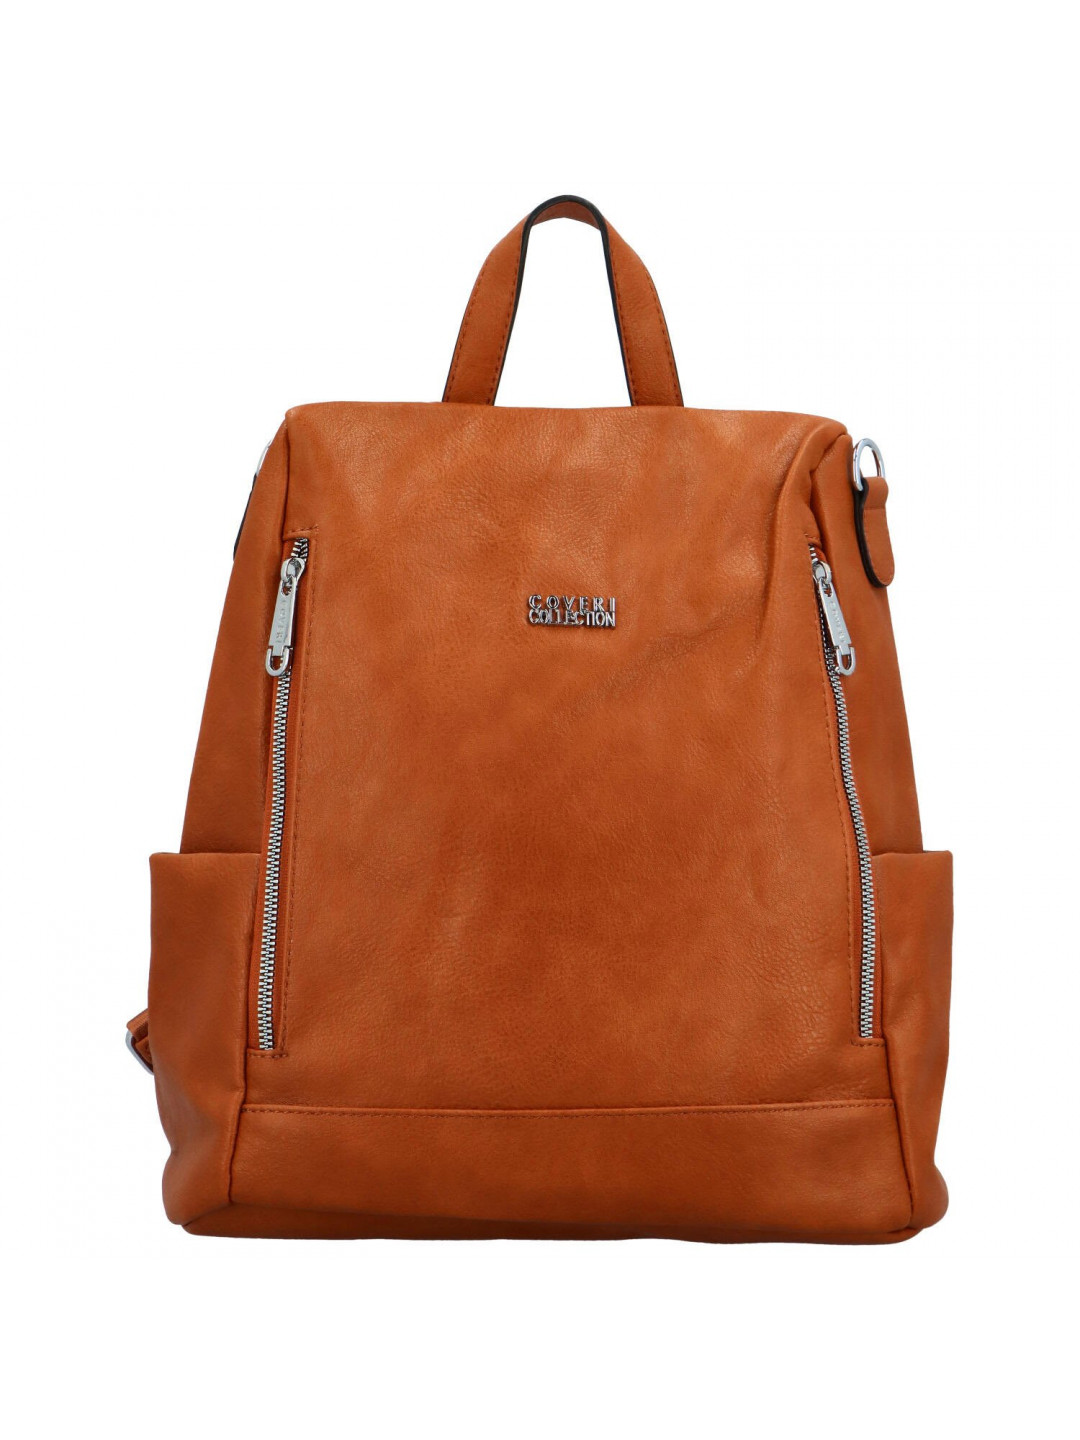 Stylový dámský koženkový kabelko batoh Trinida hnědý